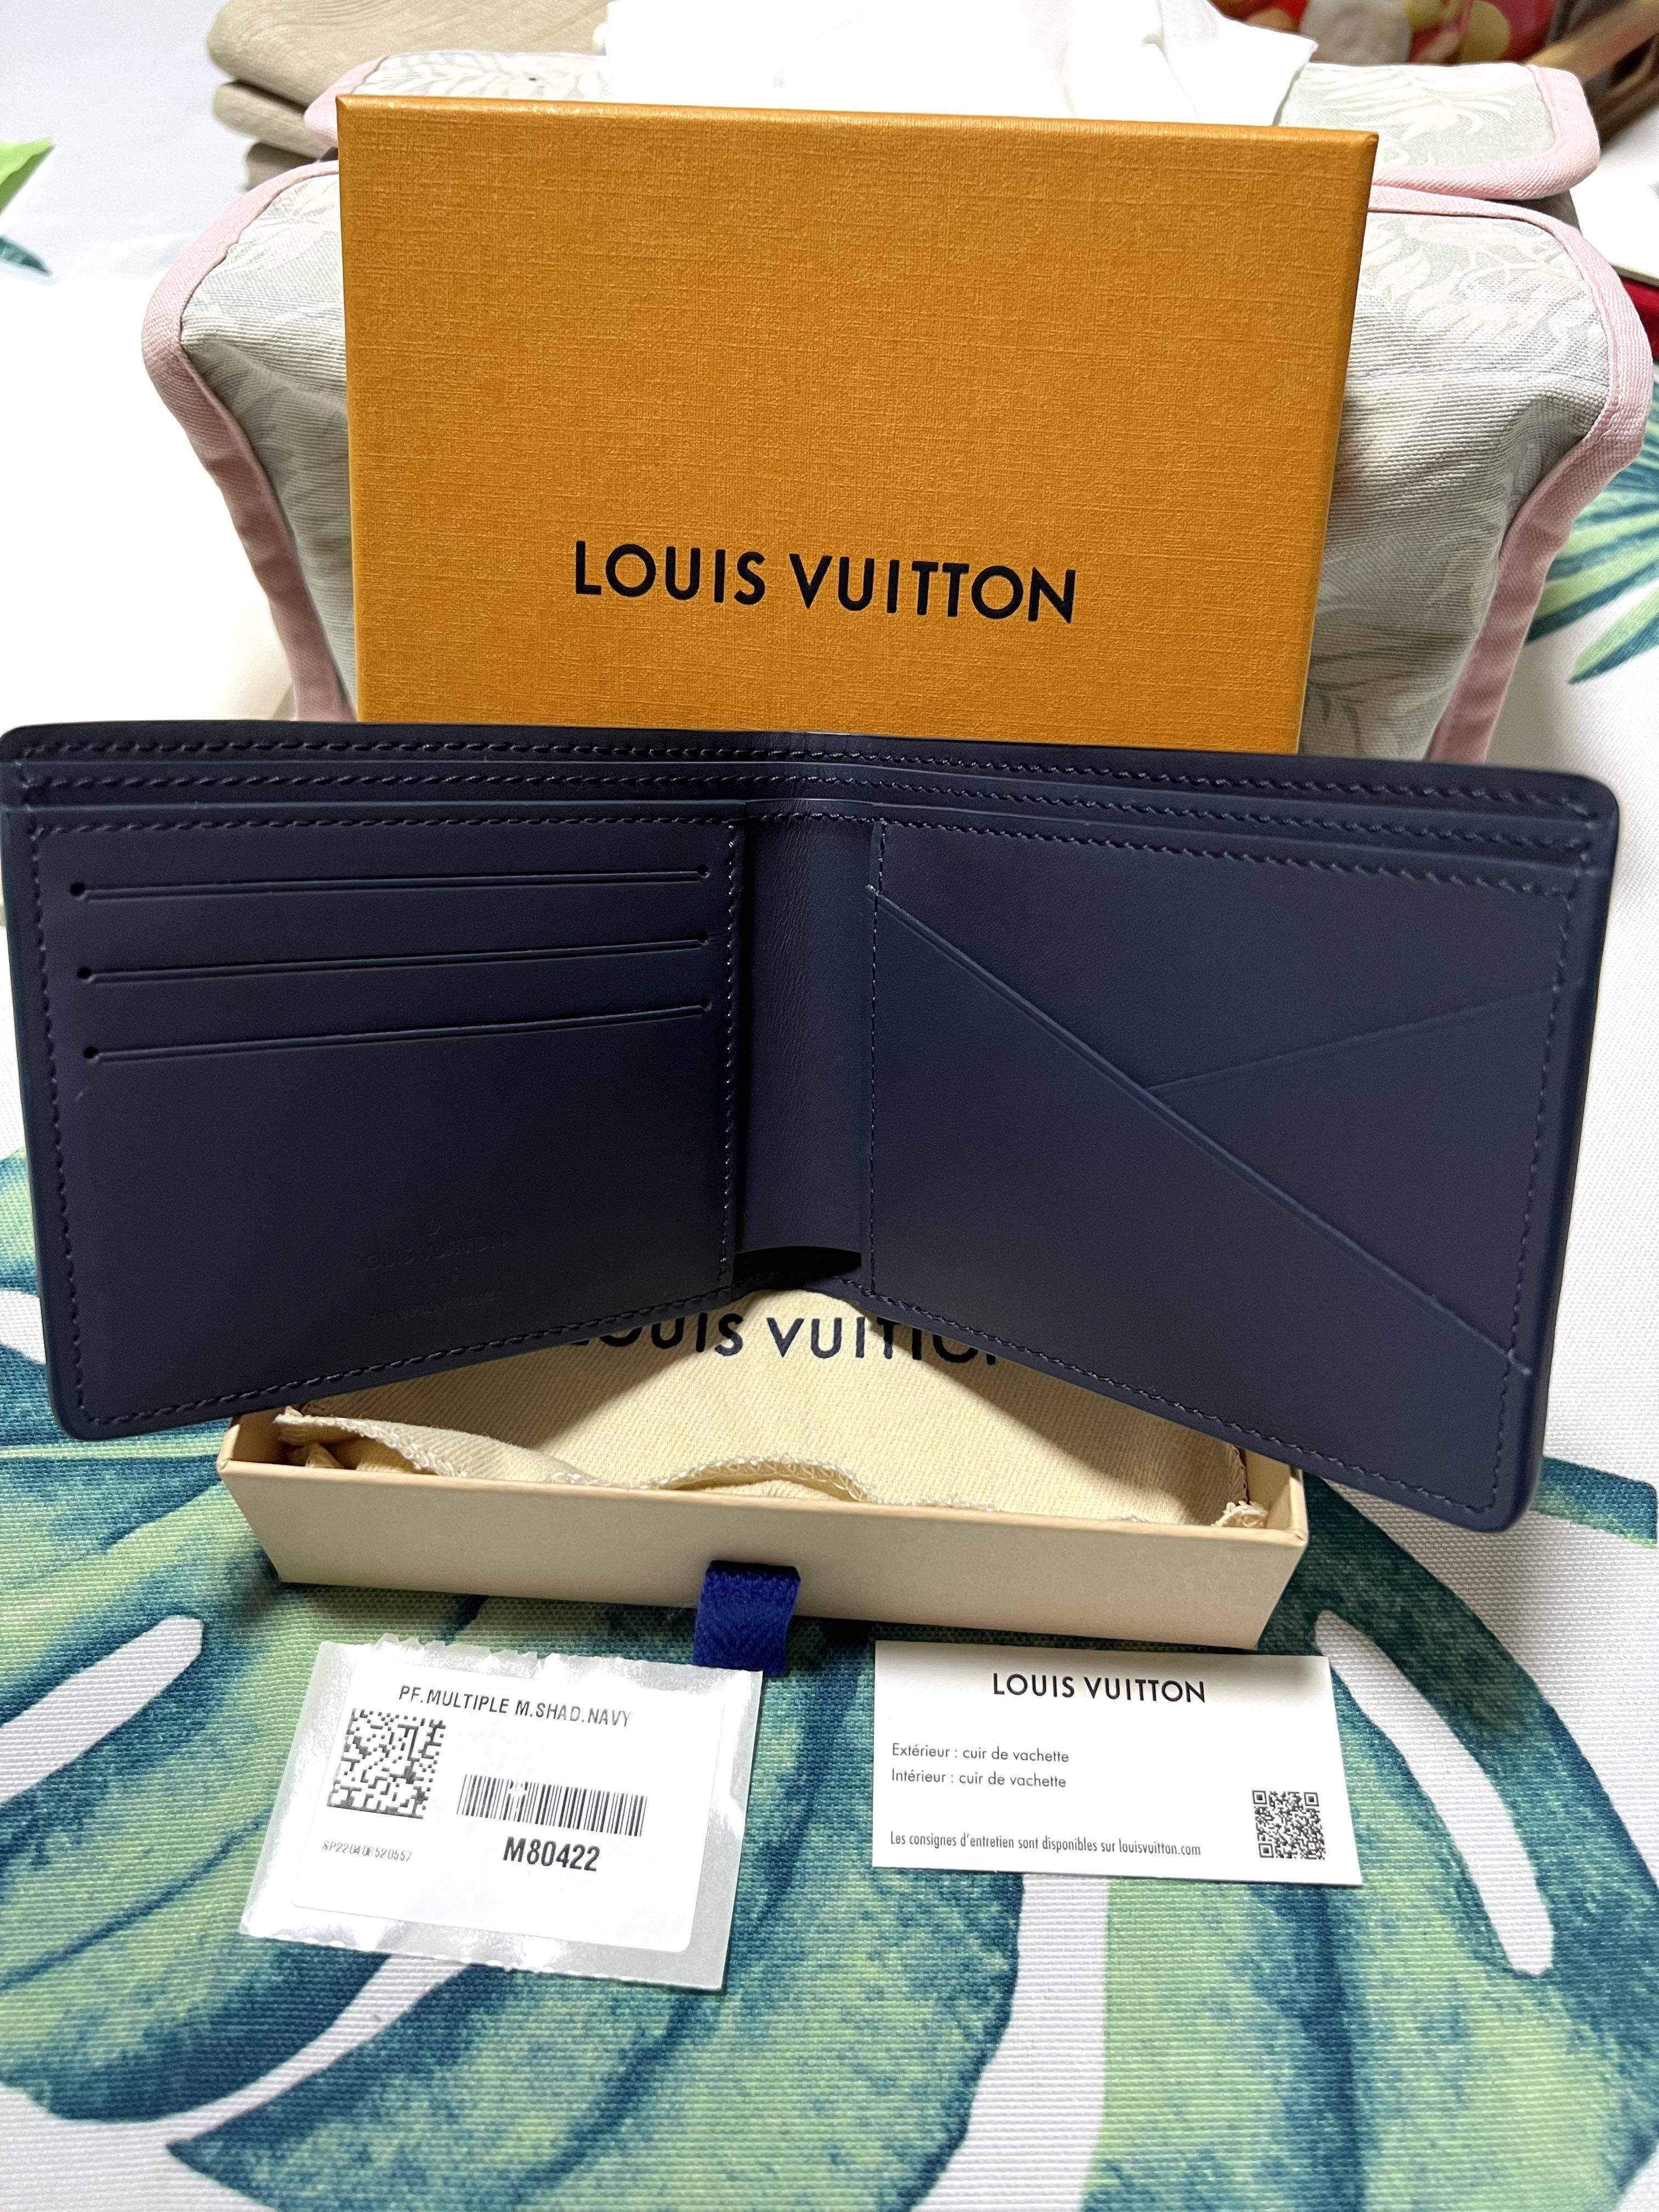 Authentic LOUIS VUITTON portefeuille M82291 Wallet #M82-291-A00